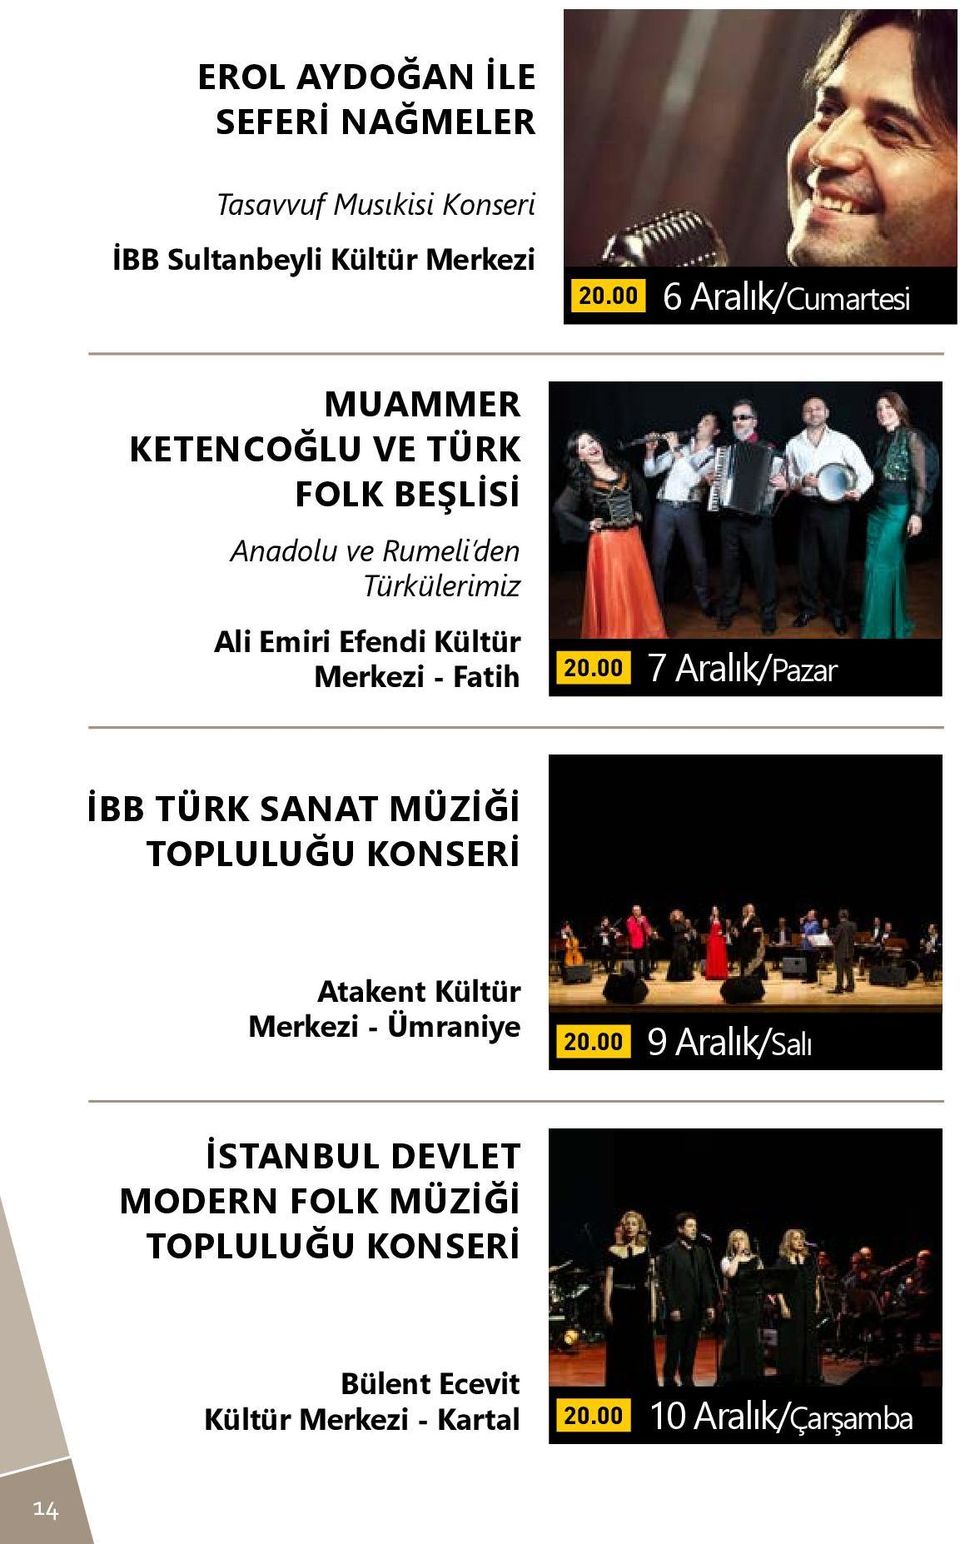 Fatih 7 Aralık/Pazar İBB Türk Sanat Müziği Topluluğu Konseri Atakent Kültür Merkezi - Ümraniye 9 Aralık/Salı